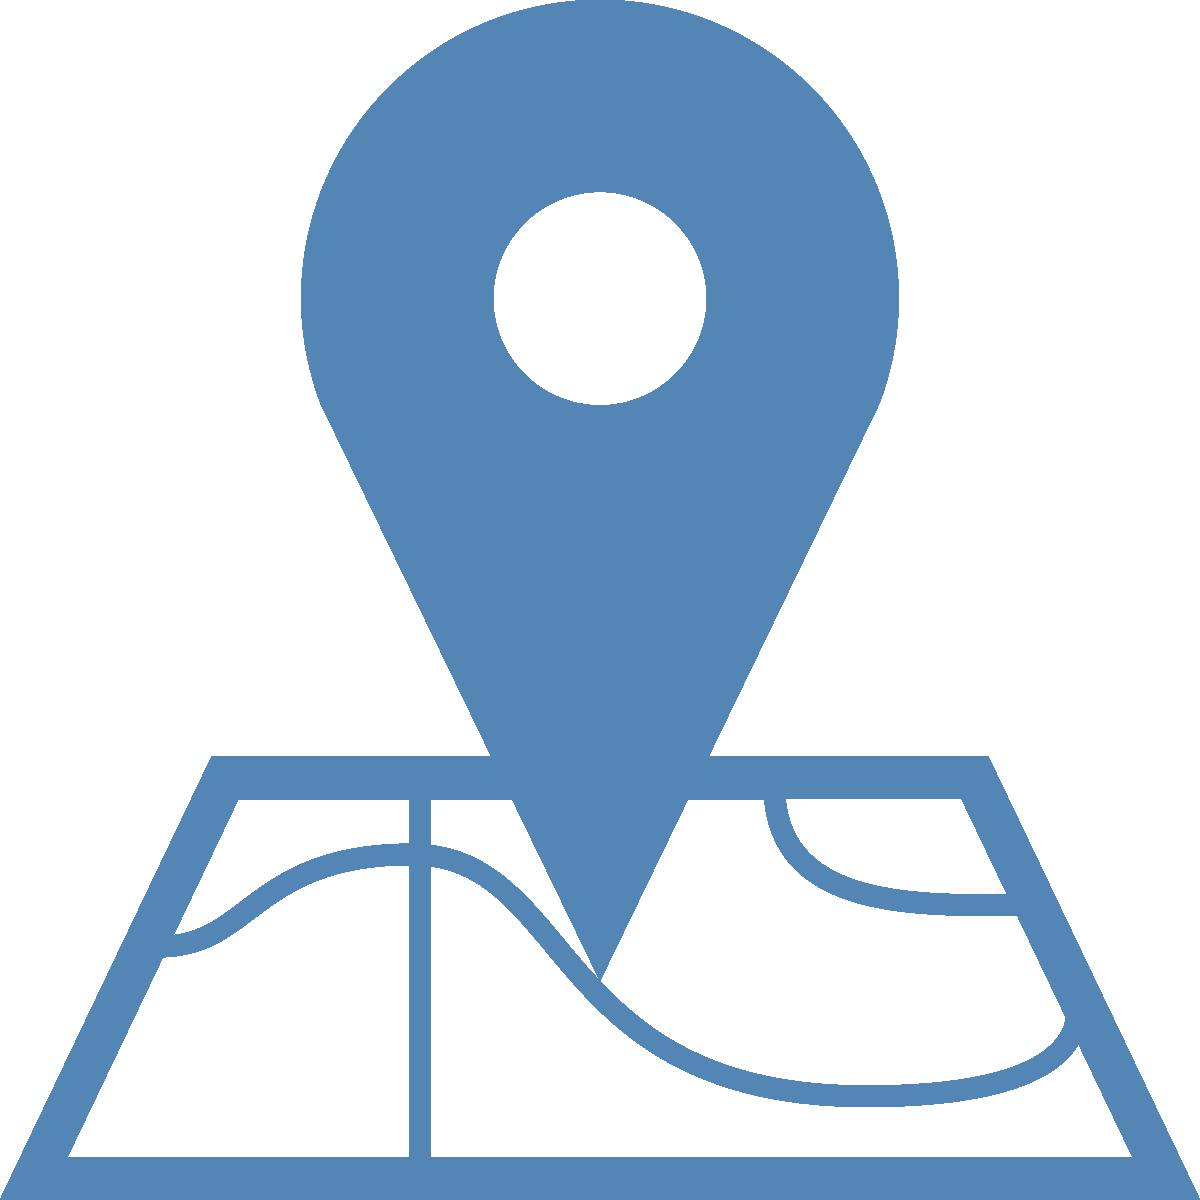 Port De L'embouchure - Location Icon For Website (1200x1200)